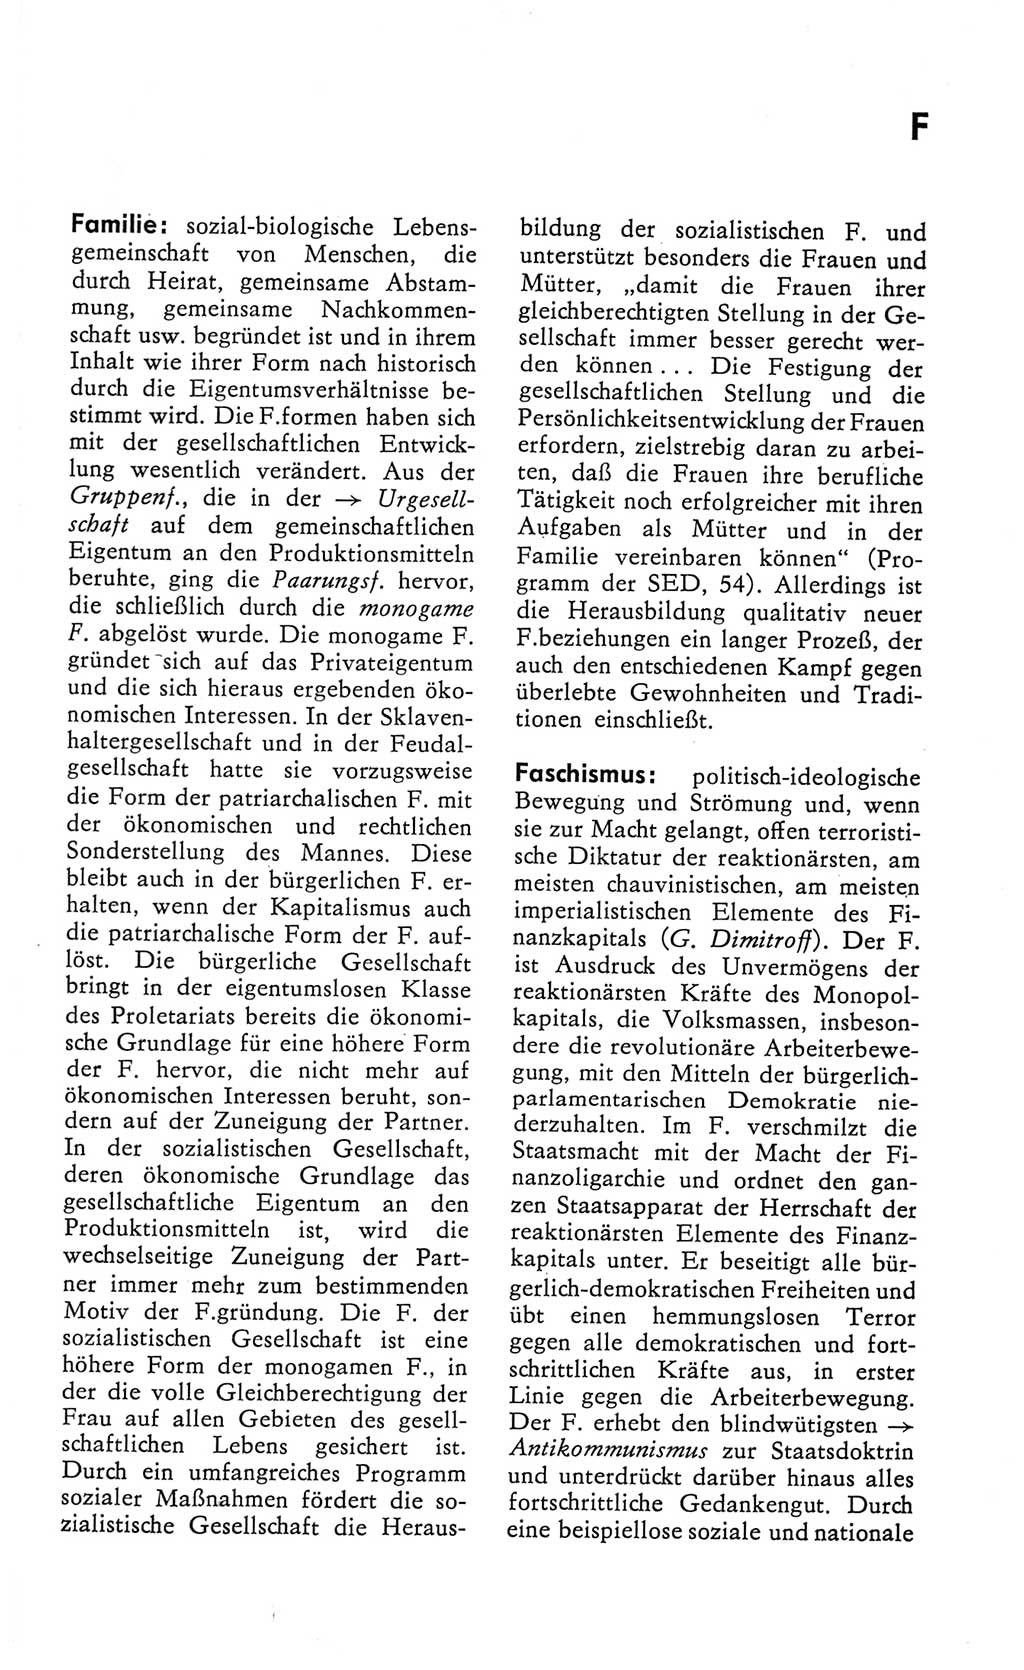 Kleines Wörterbuch der marxistisch-leninistischen Philosophie [Deutsche Demokratische Republik (DDR)] 1982, Seite 111 (Kl. Wb. ML Phil. DDR 1982, S. 111)